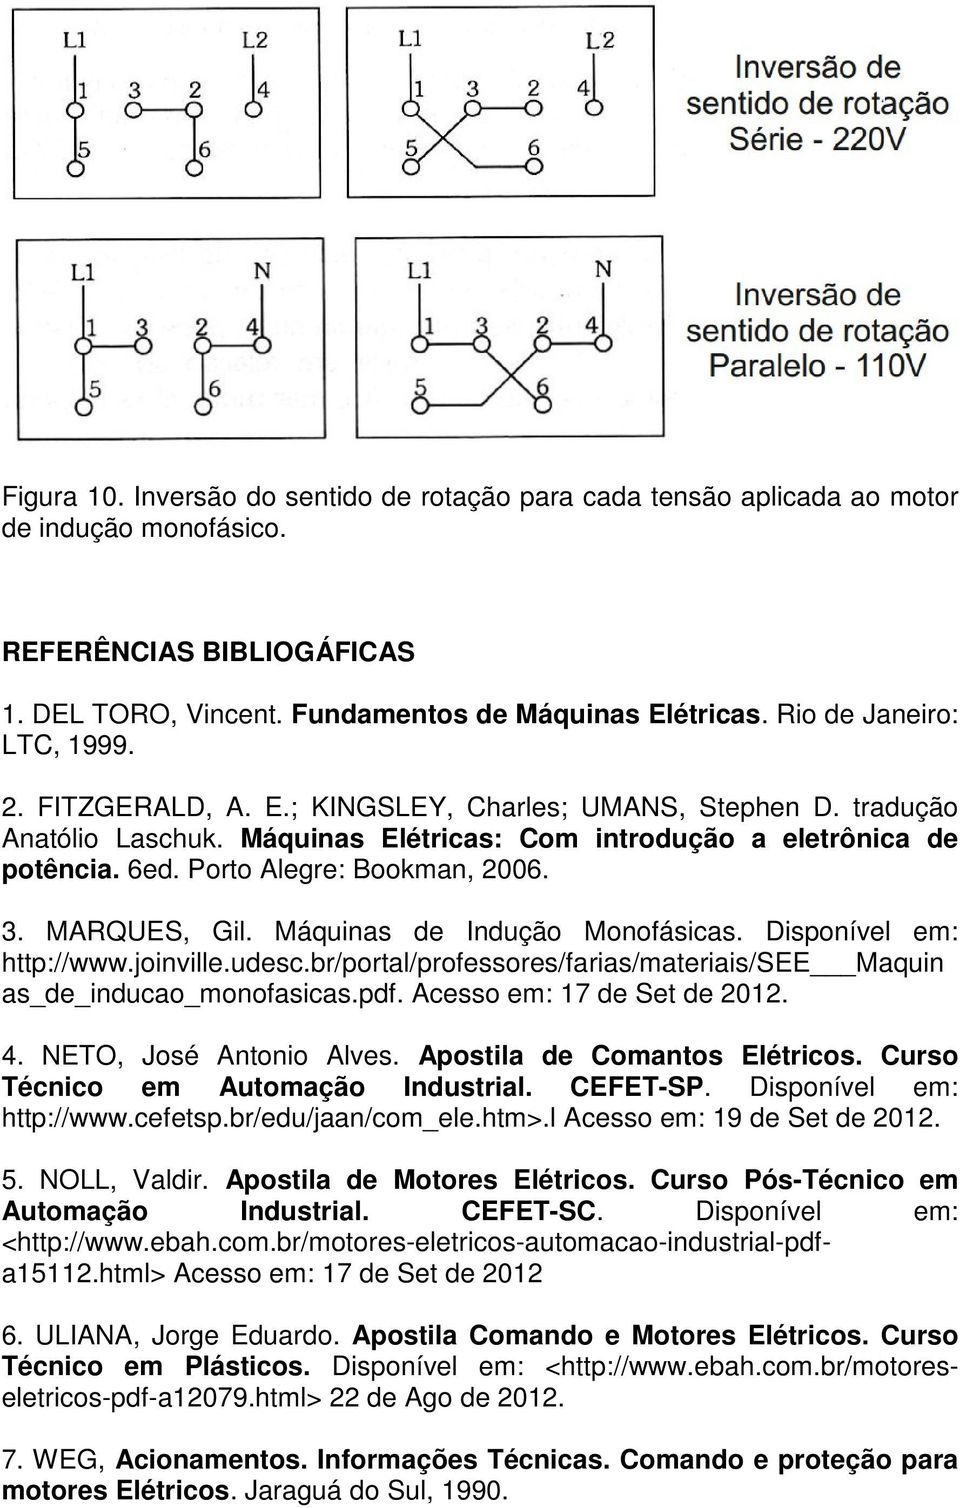 Porto Alegre: Bookman, 2006. 3. MARQUES, Gil. Máquinas de Indução Monofásicas. Disponível em: http://www.joinville.udesc.br/portal/professores/farias/materiais/see Maquin as_de_inducao_monofasicas.